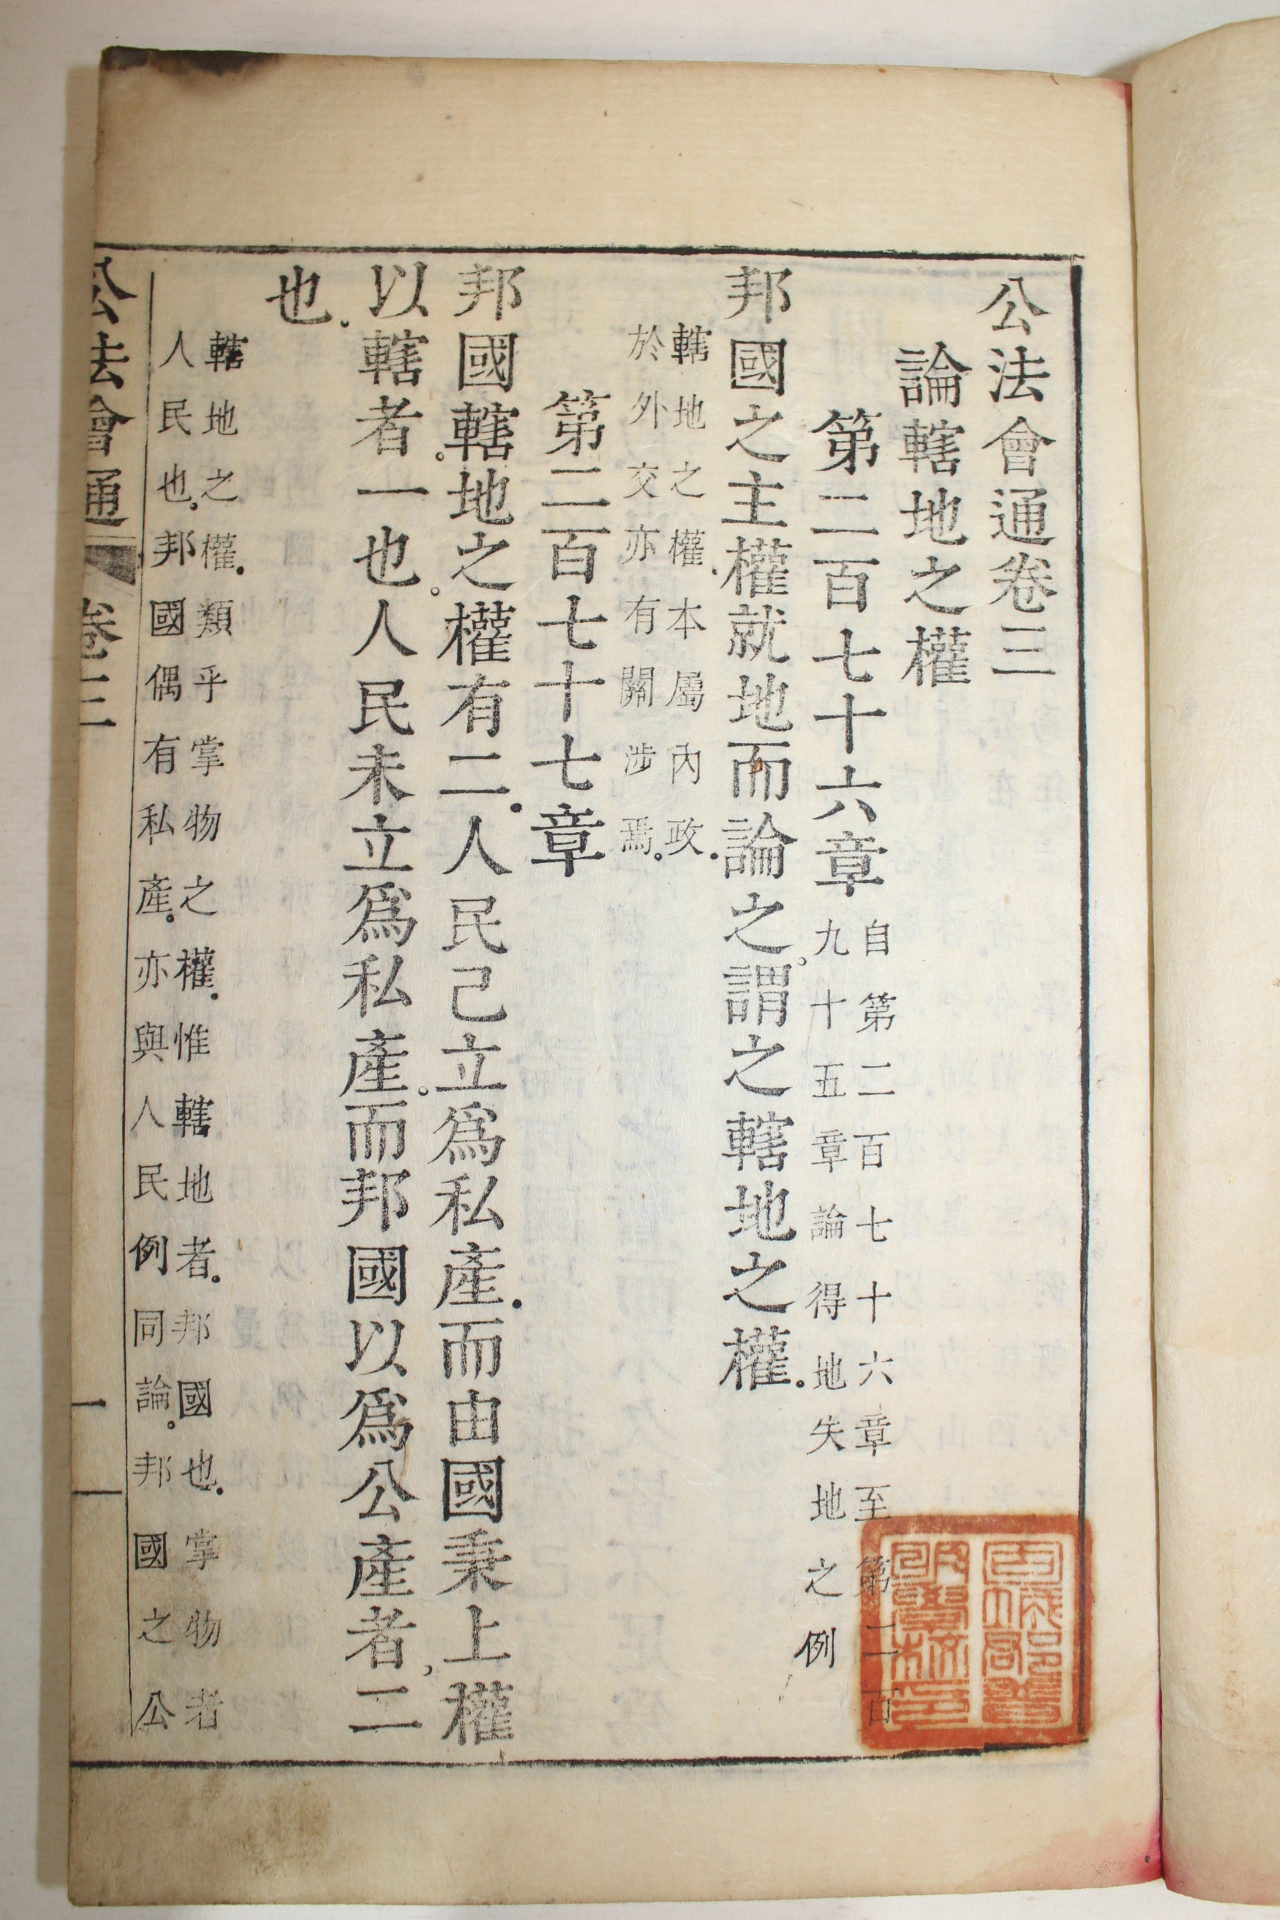 1896년 금속활자 재주정리자본(再鑄整理字本) 공법회통(公法會通) 3책완질